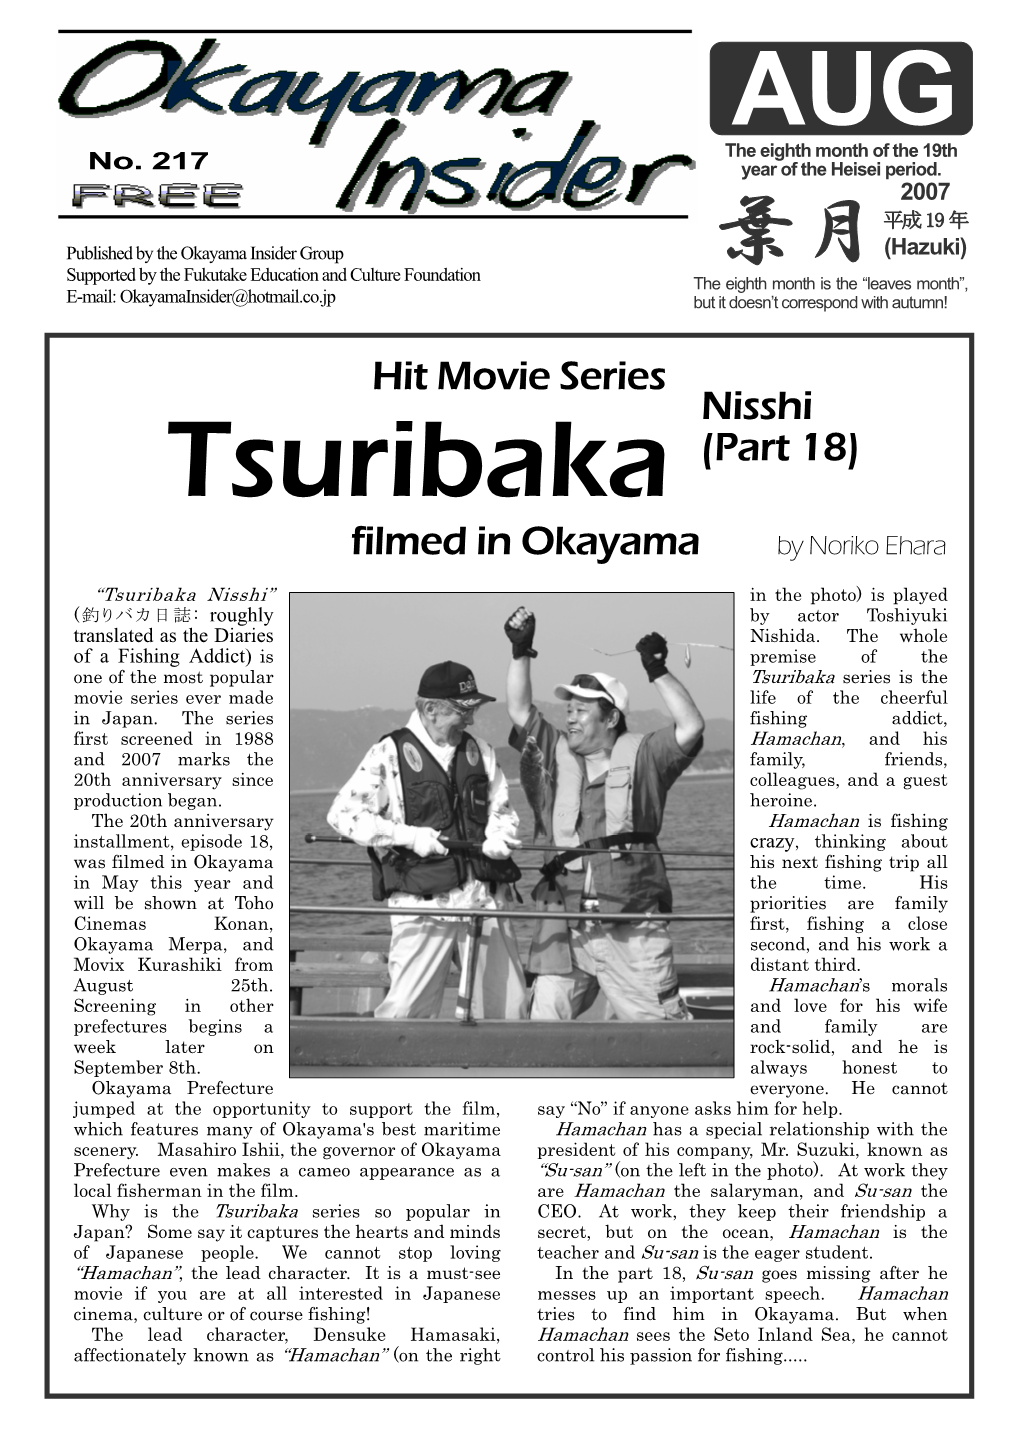 Aug 2007 Movie: Tsuribaka Nisshi 18